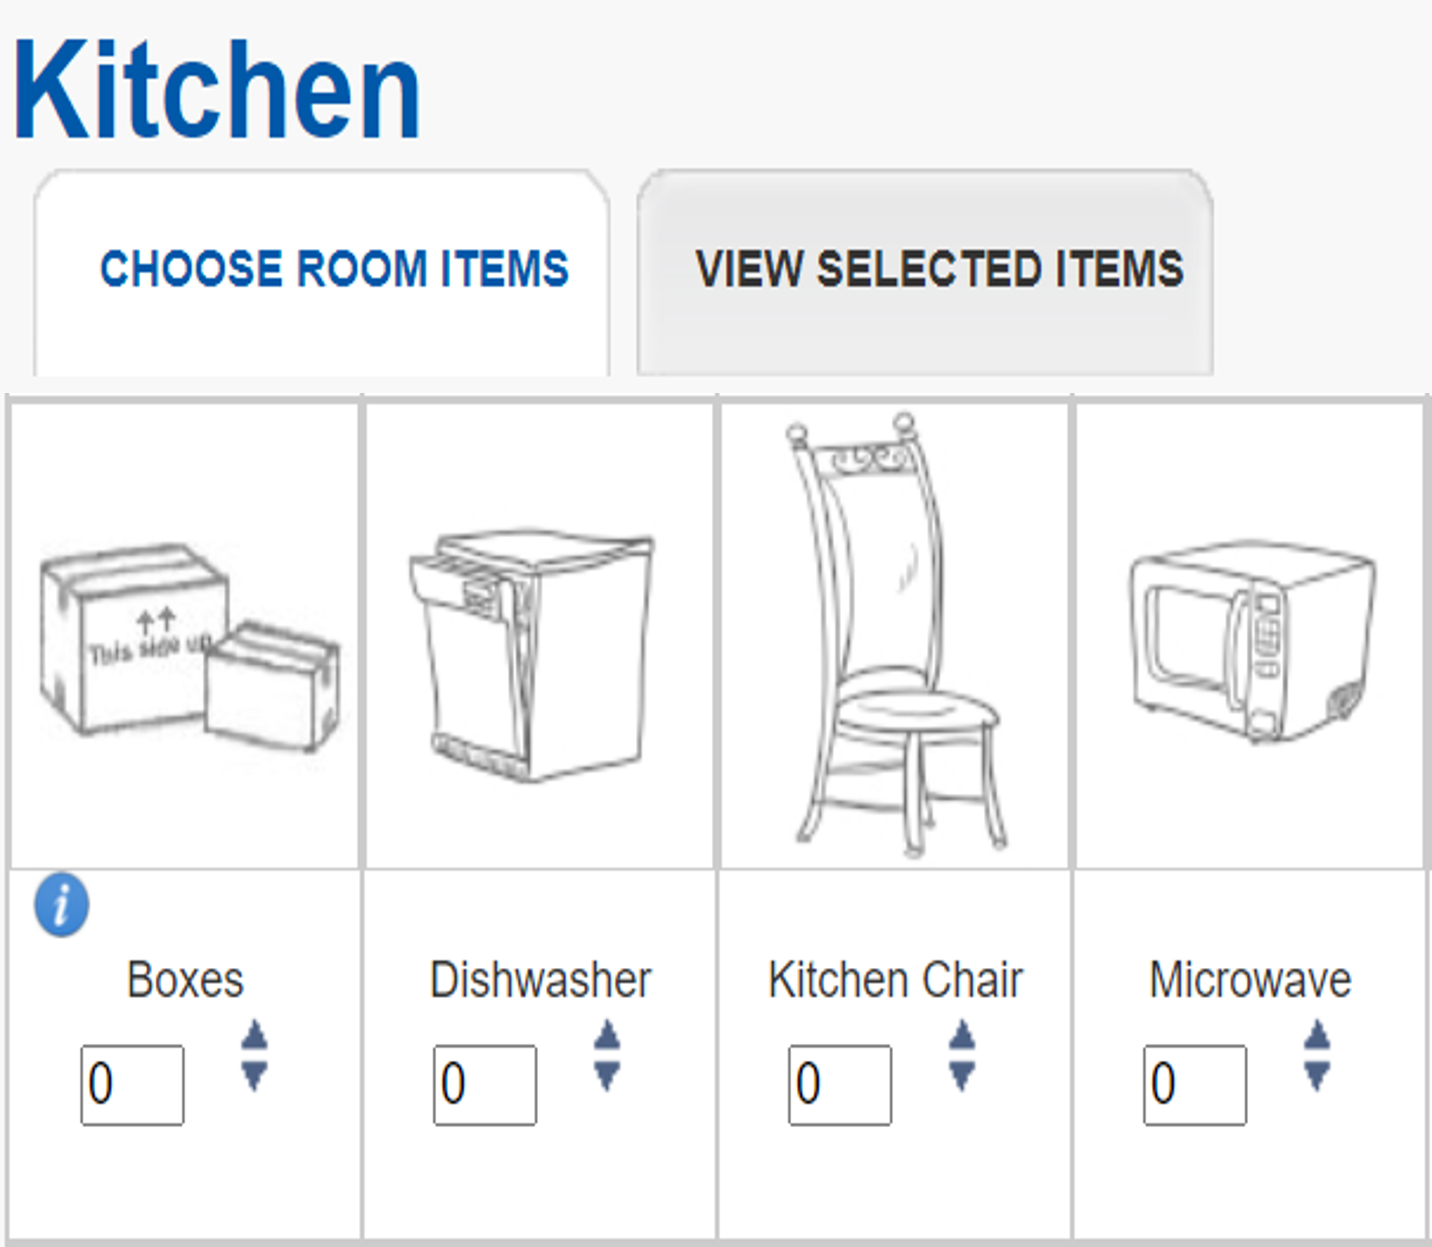 Choose room items